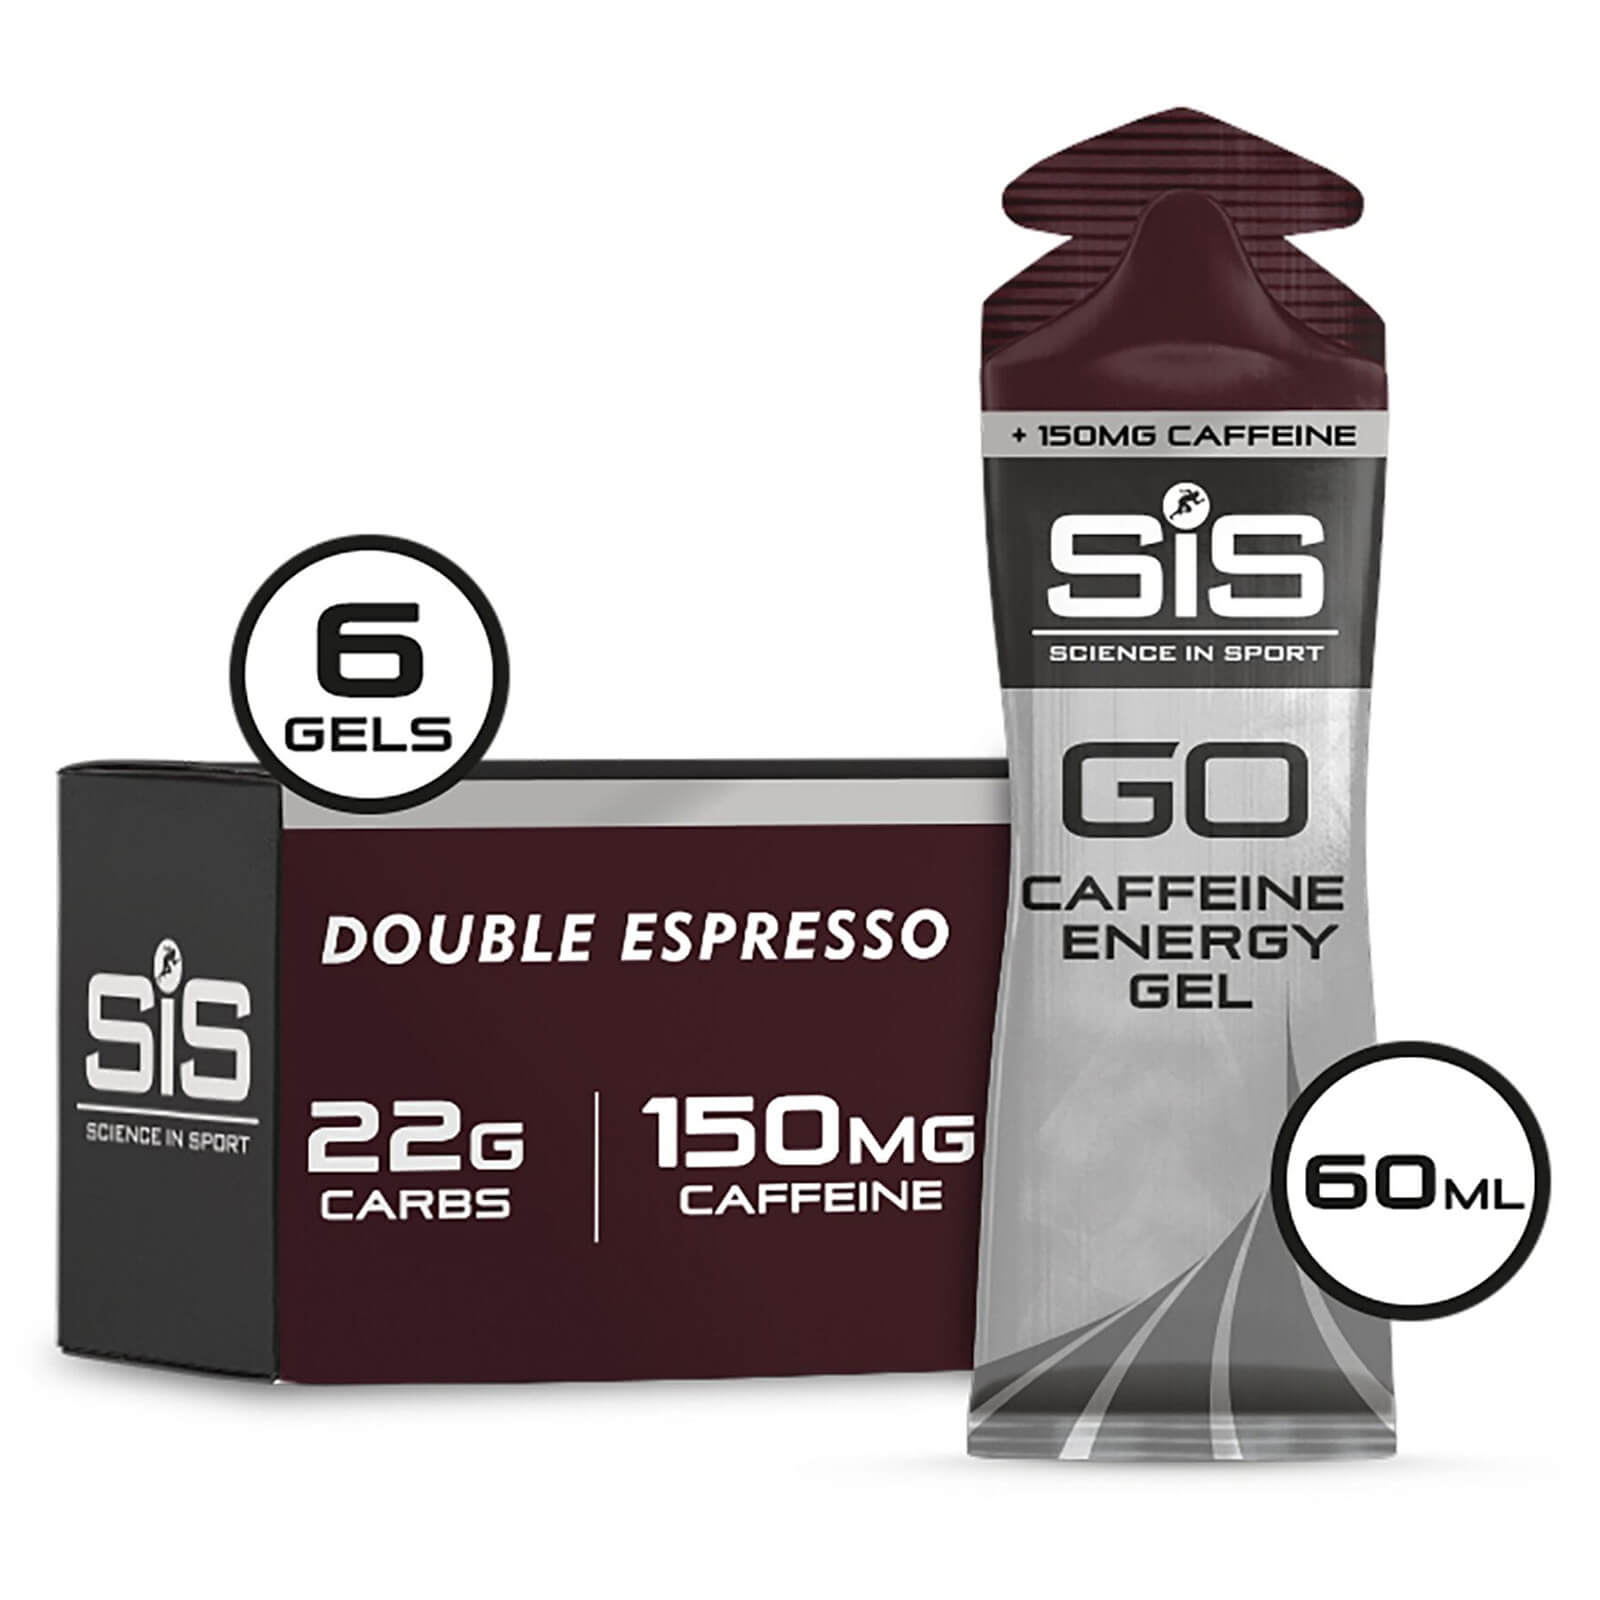 Science in Sport GO + Caffeine Energy Gel 60ml Box of 6 - 6Softgel - Box - Espresso